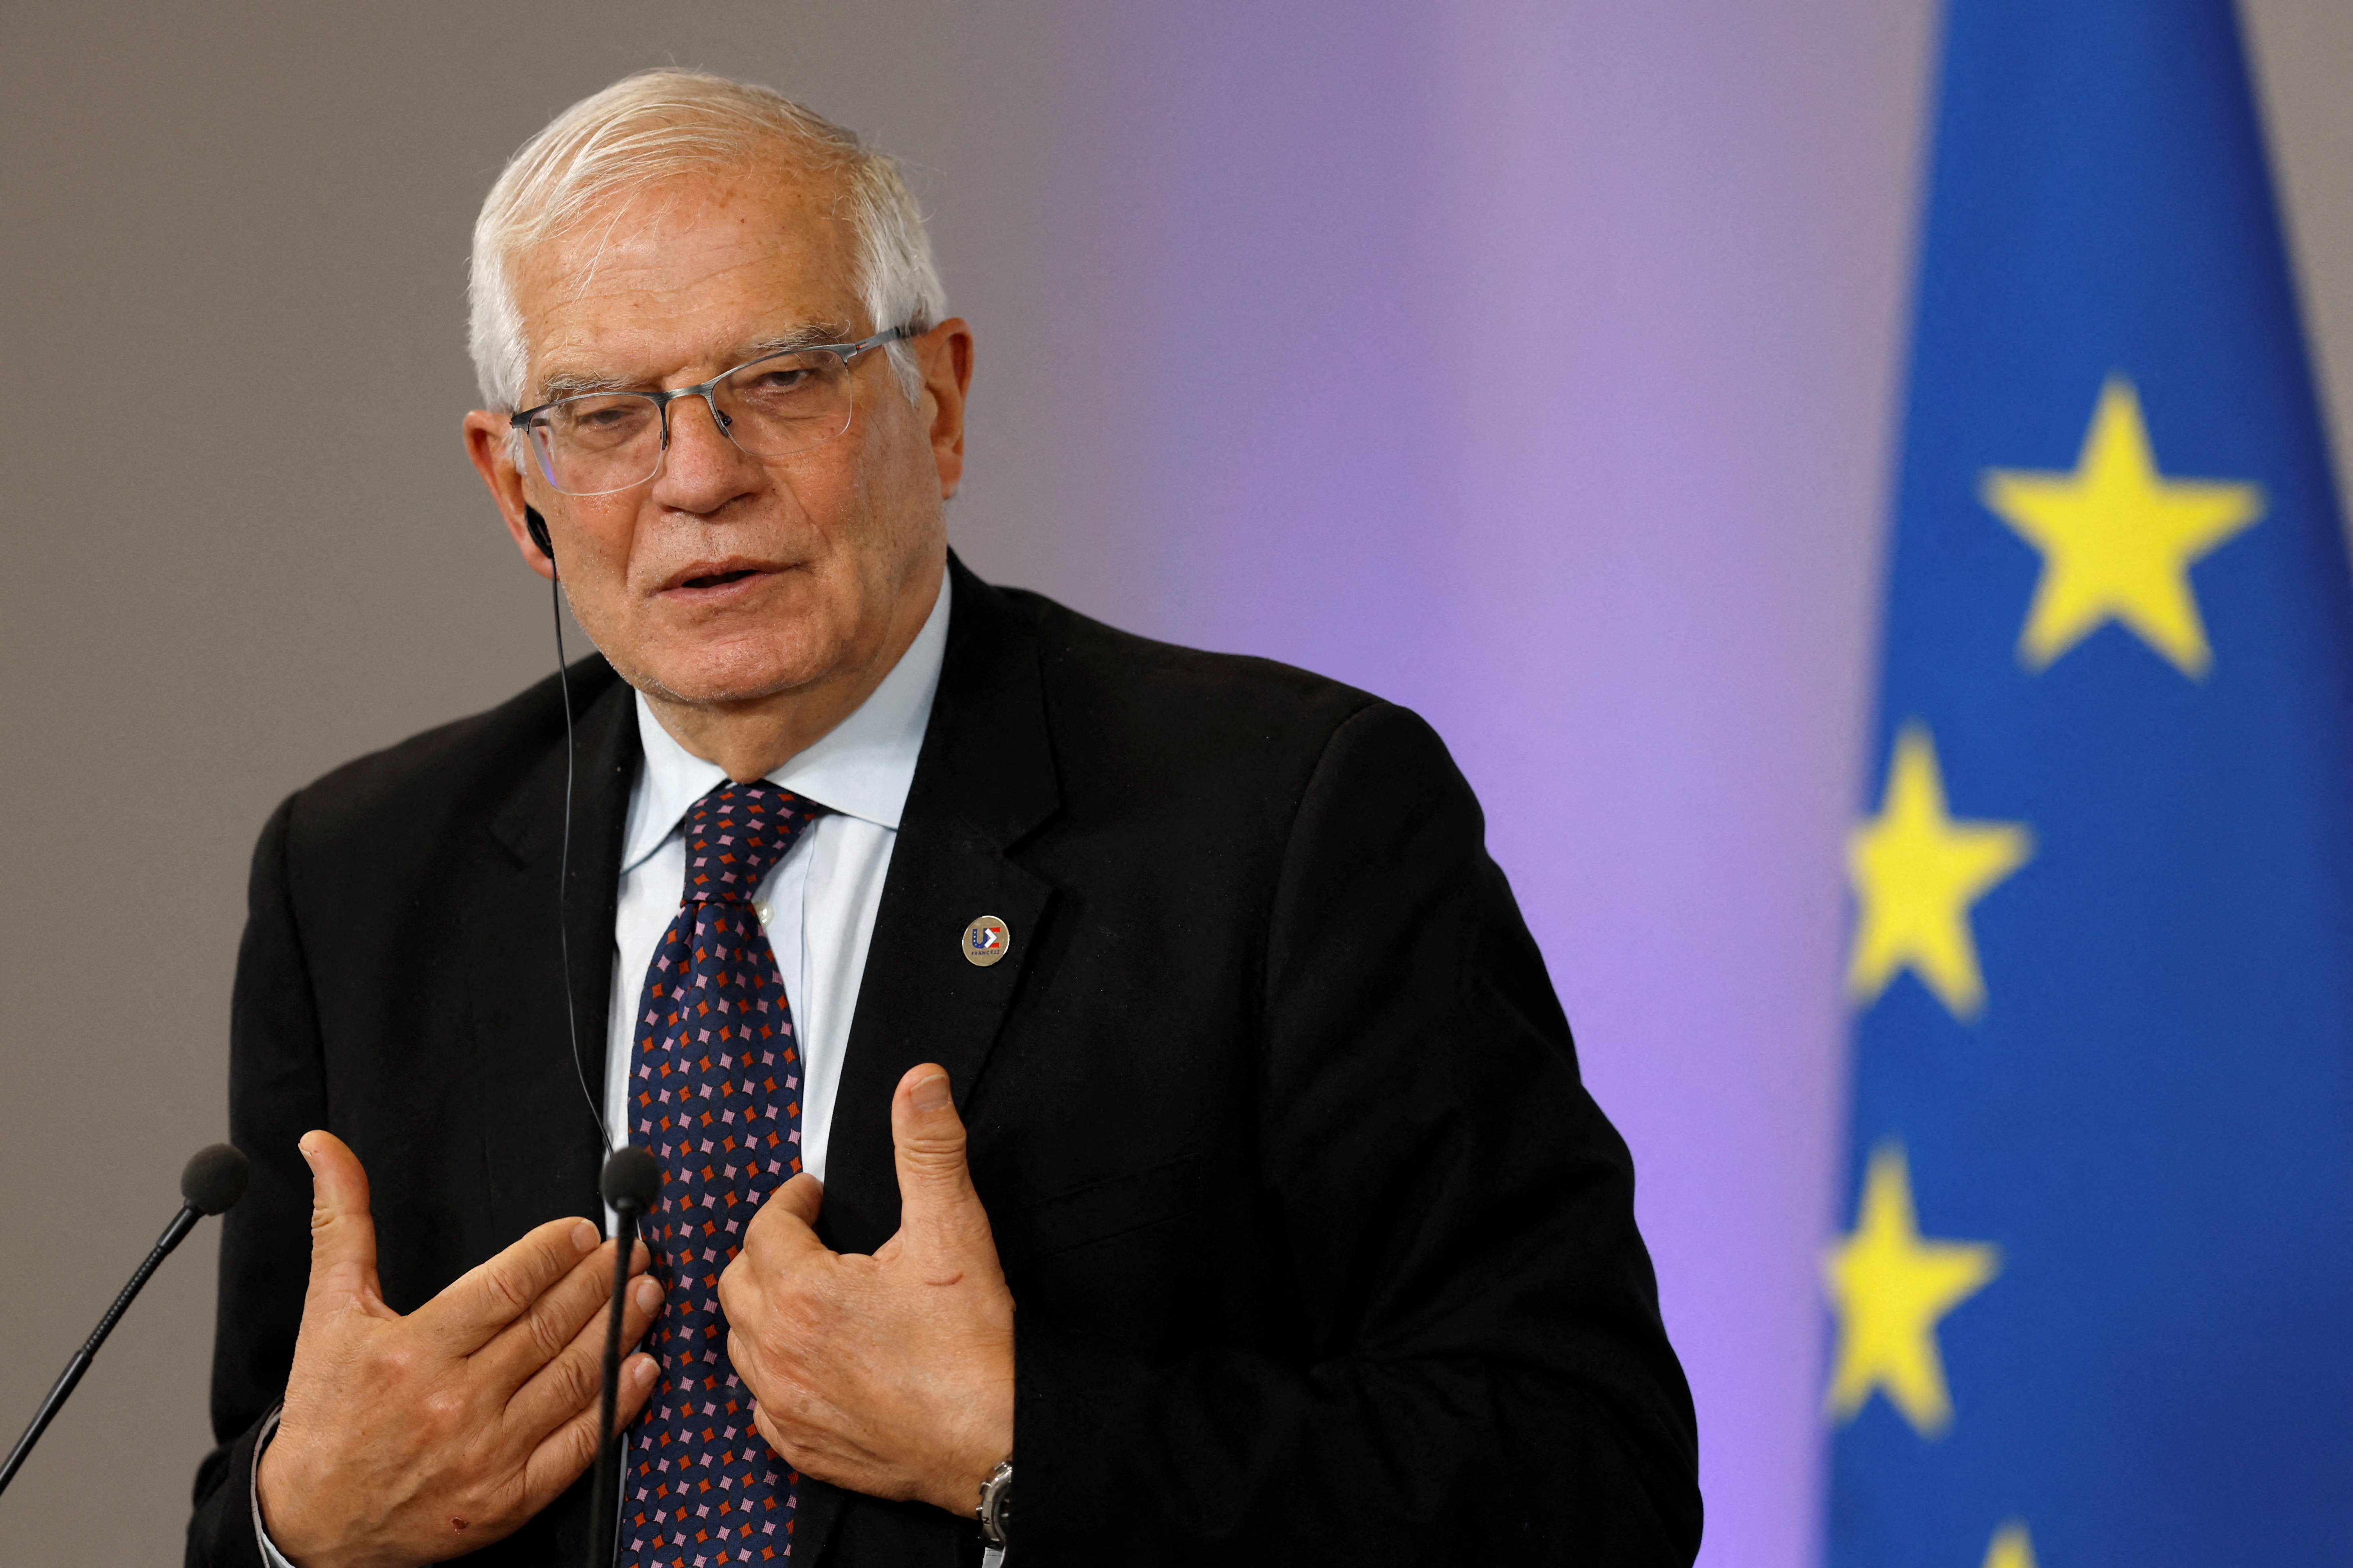 Ο Ύπατος Εκπρόσωπος της Ευρωπαϊκής Ένωσης για θέματα Εξωτερικής Πολιτικής και Πολιτικής Ασφάλειας Josep Borrell χειρονομεί κατά τη διάρκεια μιας κοινής συνέντευξης Τύπου με τον Γάλλο Υπουργό Ευρώπης και Εξωτερικών Jean-Yves Le Drian (δεν εμφανίζεται) στο πλαίσιο άτυπης συνάντησης των Υπουργών Εξωτερικών της Ευρωπαϊκής Ένωσης (Gymnich) στη Βρέστη, στη δυτική Γαλλία, 14 Ιανουαρίου 2022. REUTERS/Stephane Mahe